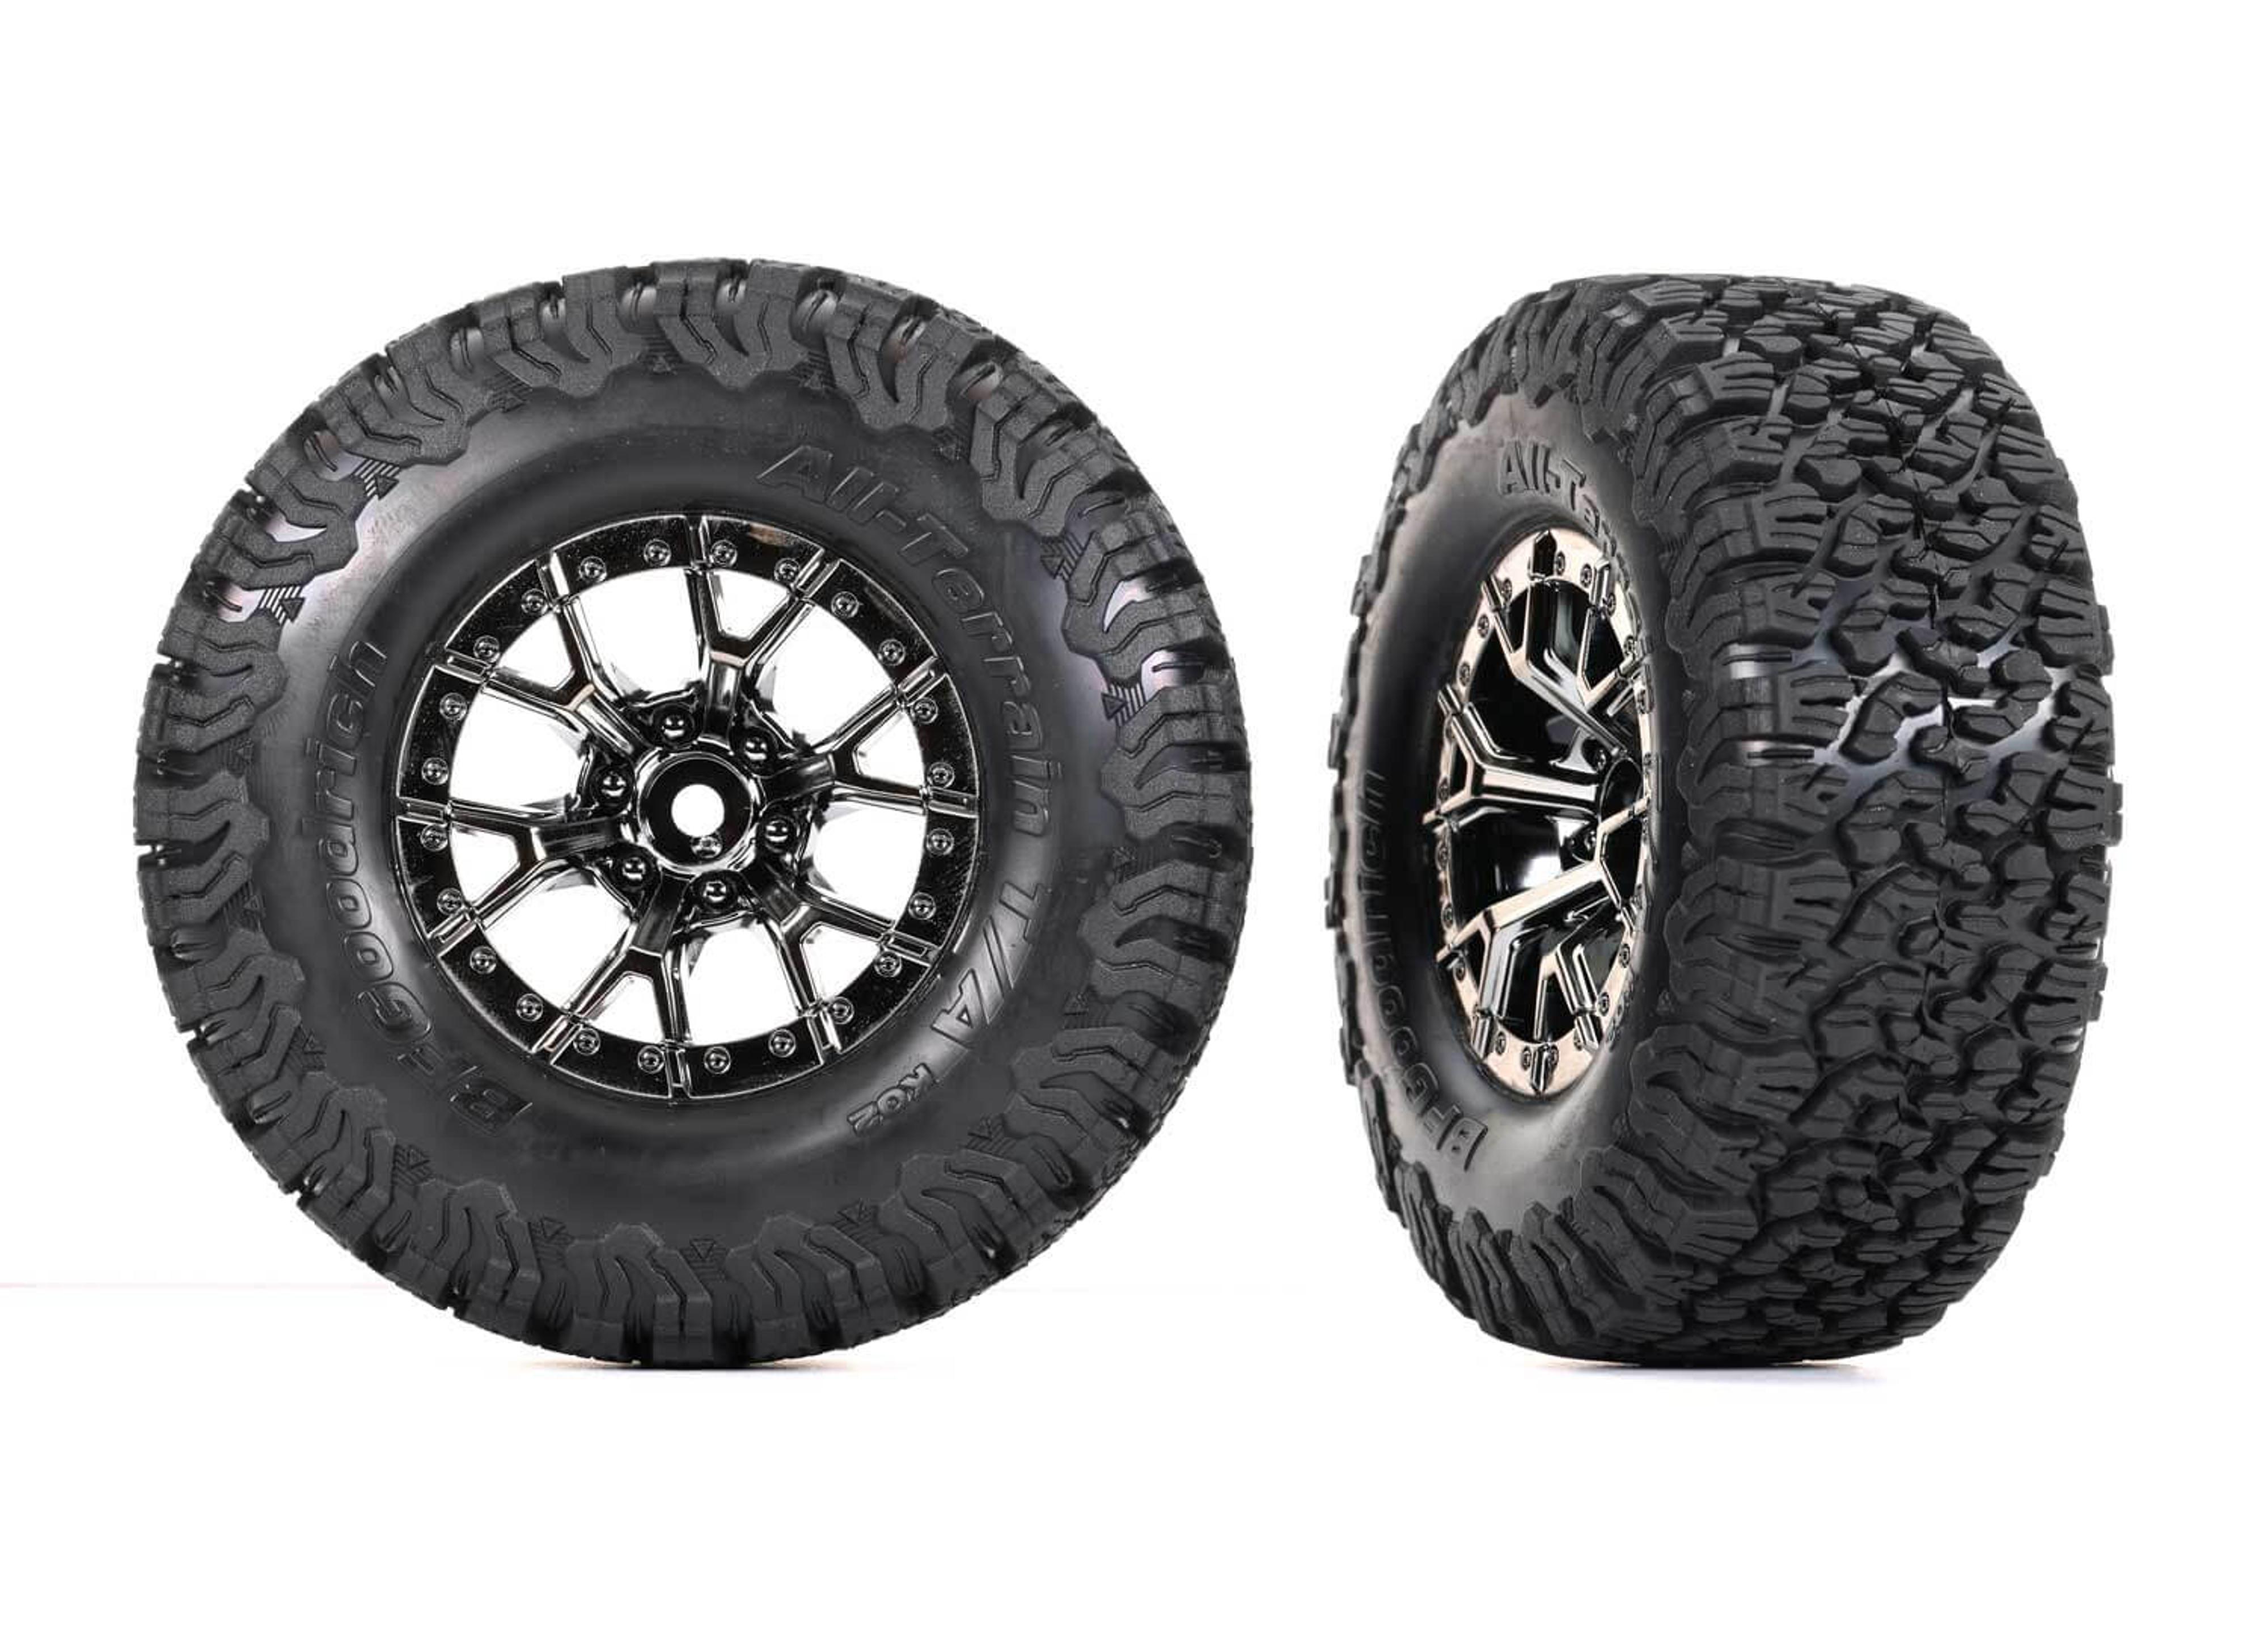 Ford Raptor R Black Chrome Wheels, BFGoodrich All-Terrain T/A KO2 Tires (2WD Rr) (1 pair)